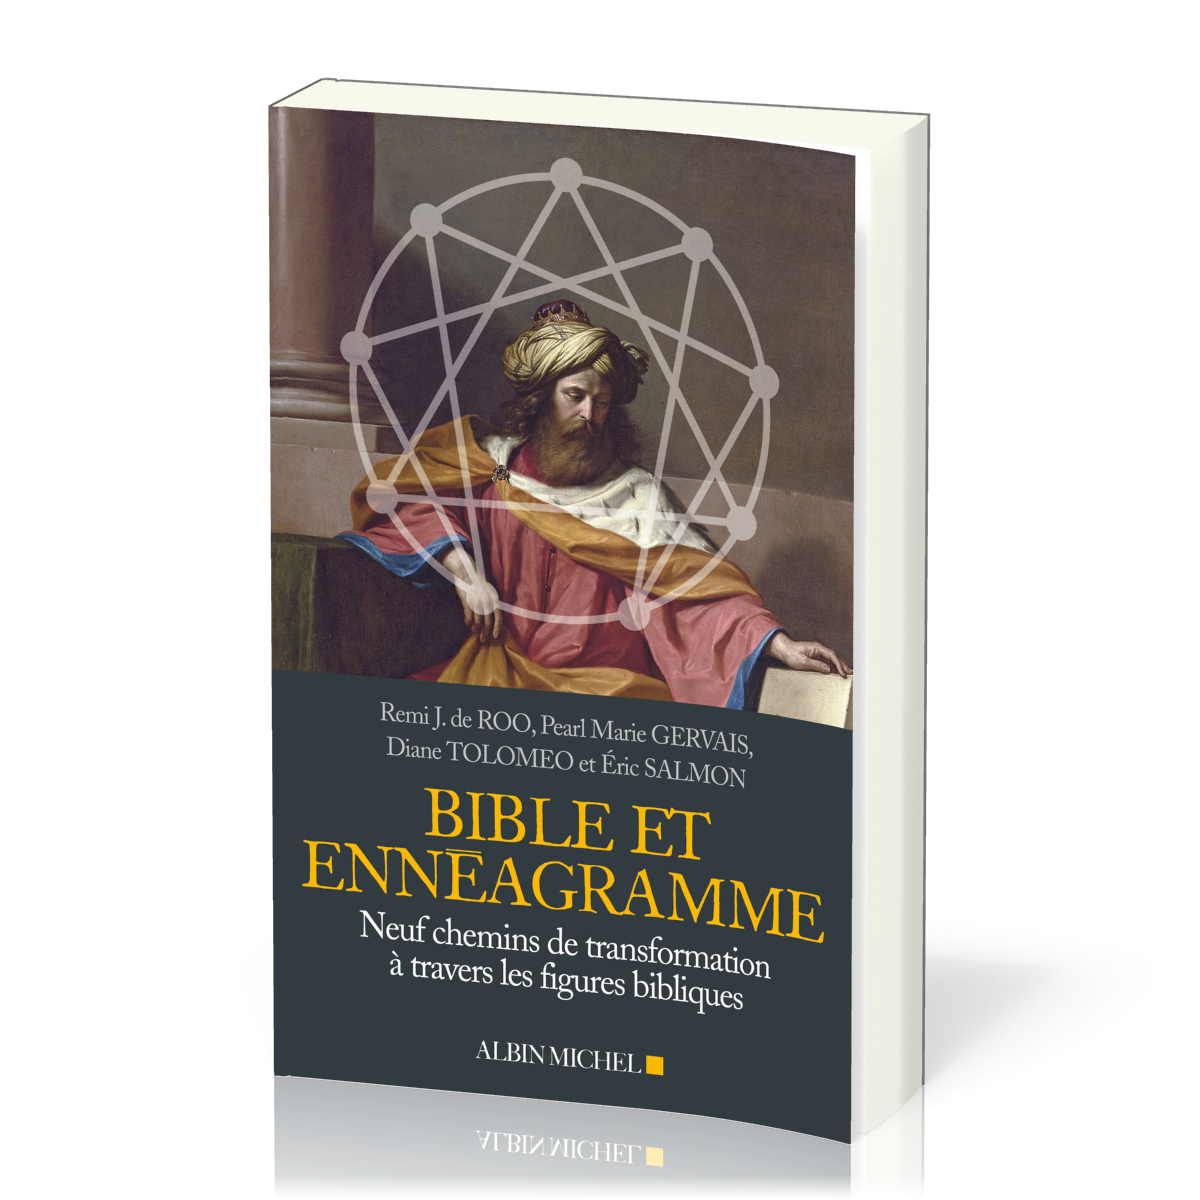 Bible et ennéagramme - Neuf chemins de transformation a travers les figures bibliques